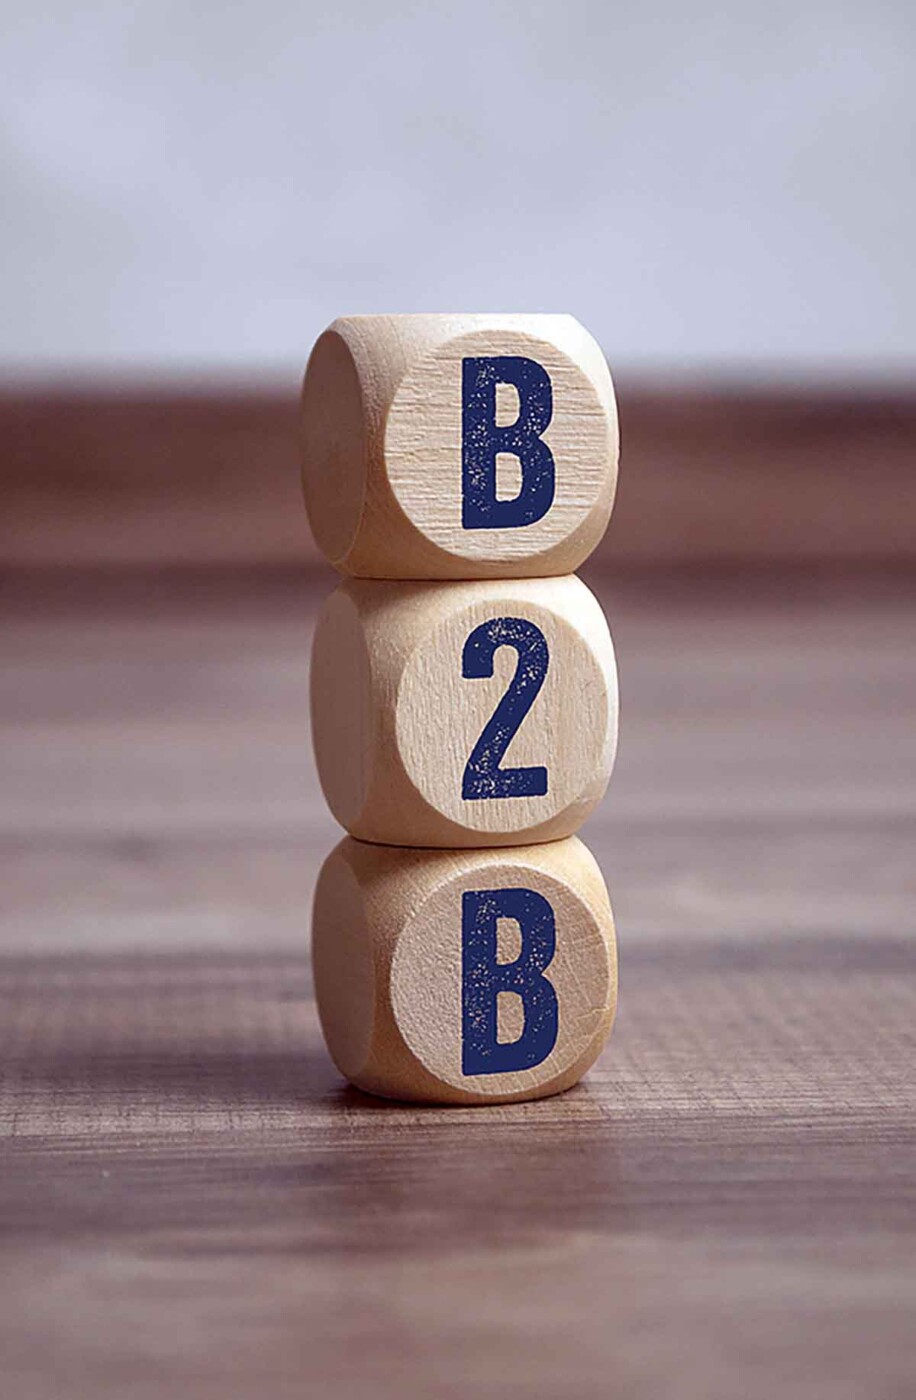 b2b marketing tips